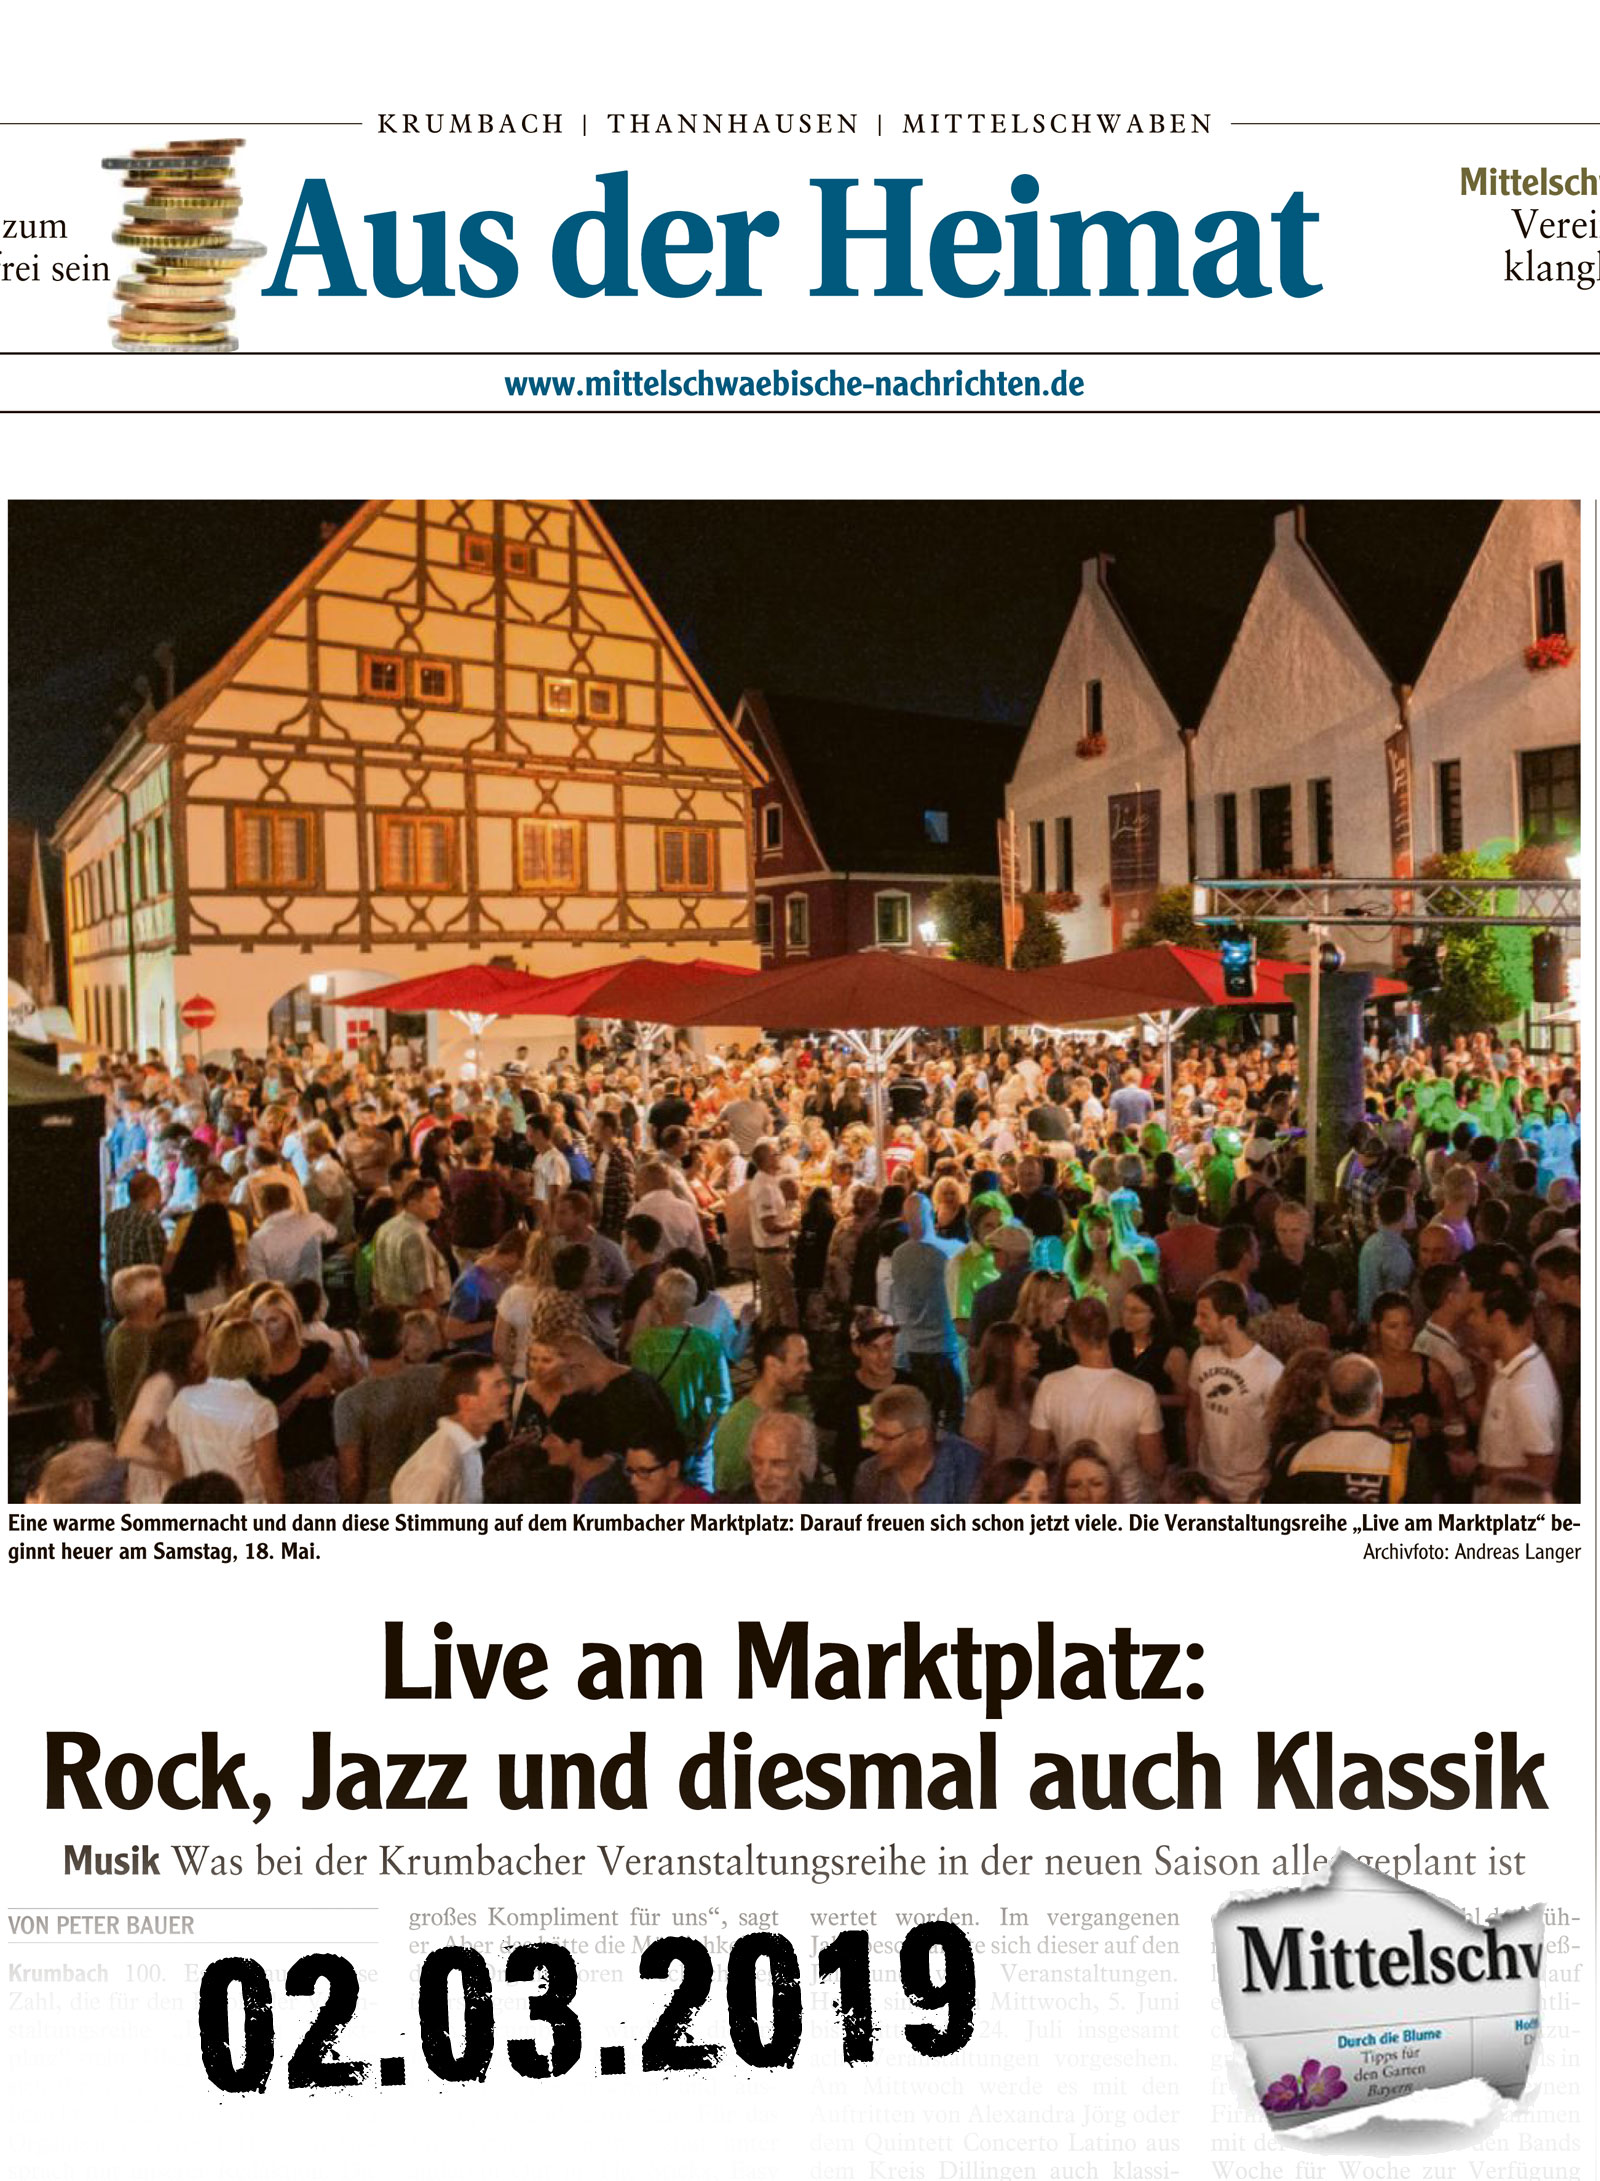 Mittelschwaebische Nachrichten vom 03.02.2019 "live am Marktplatz" Rock, Jazz und Klassik